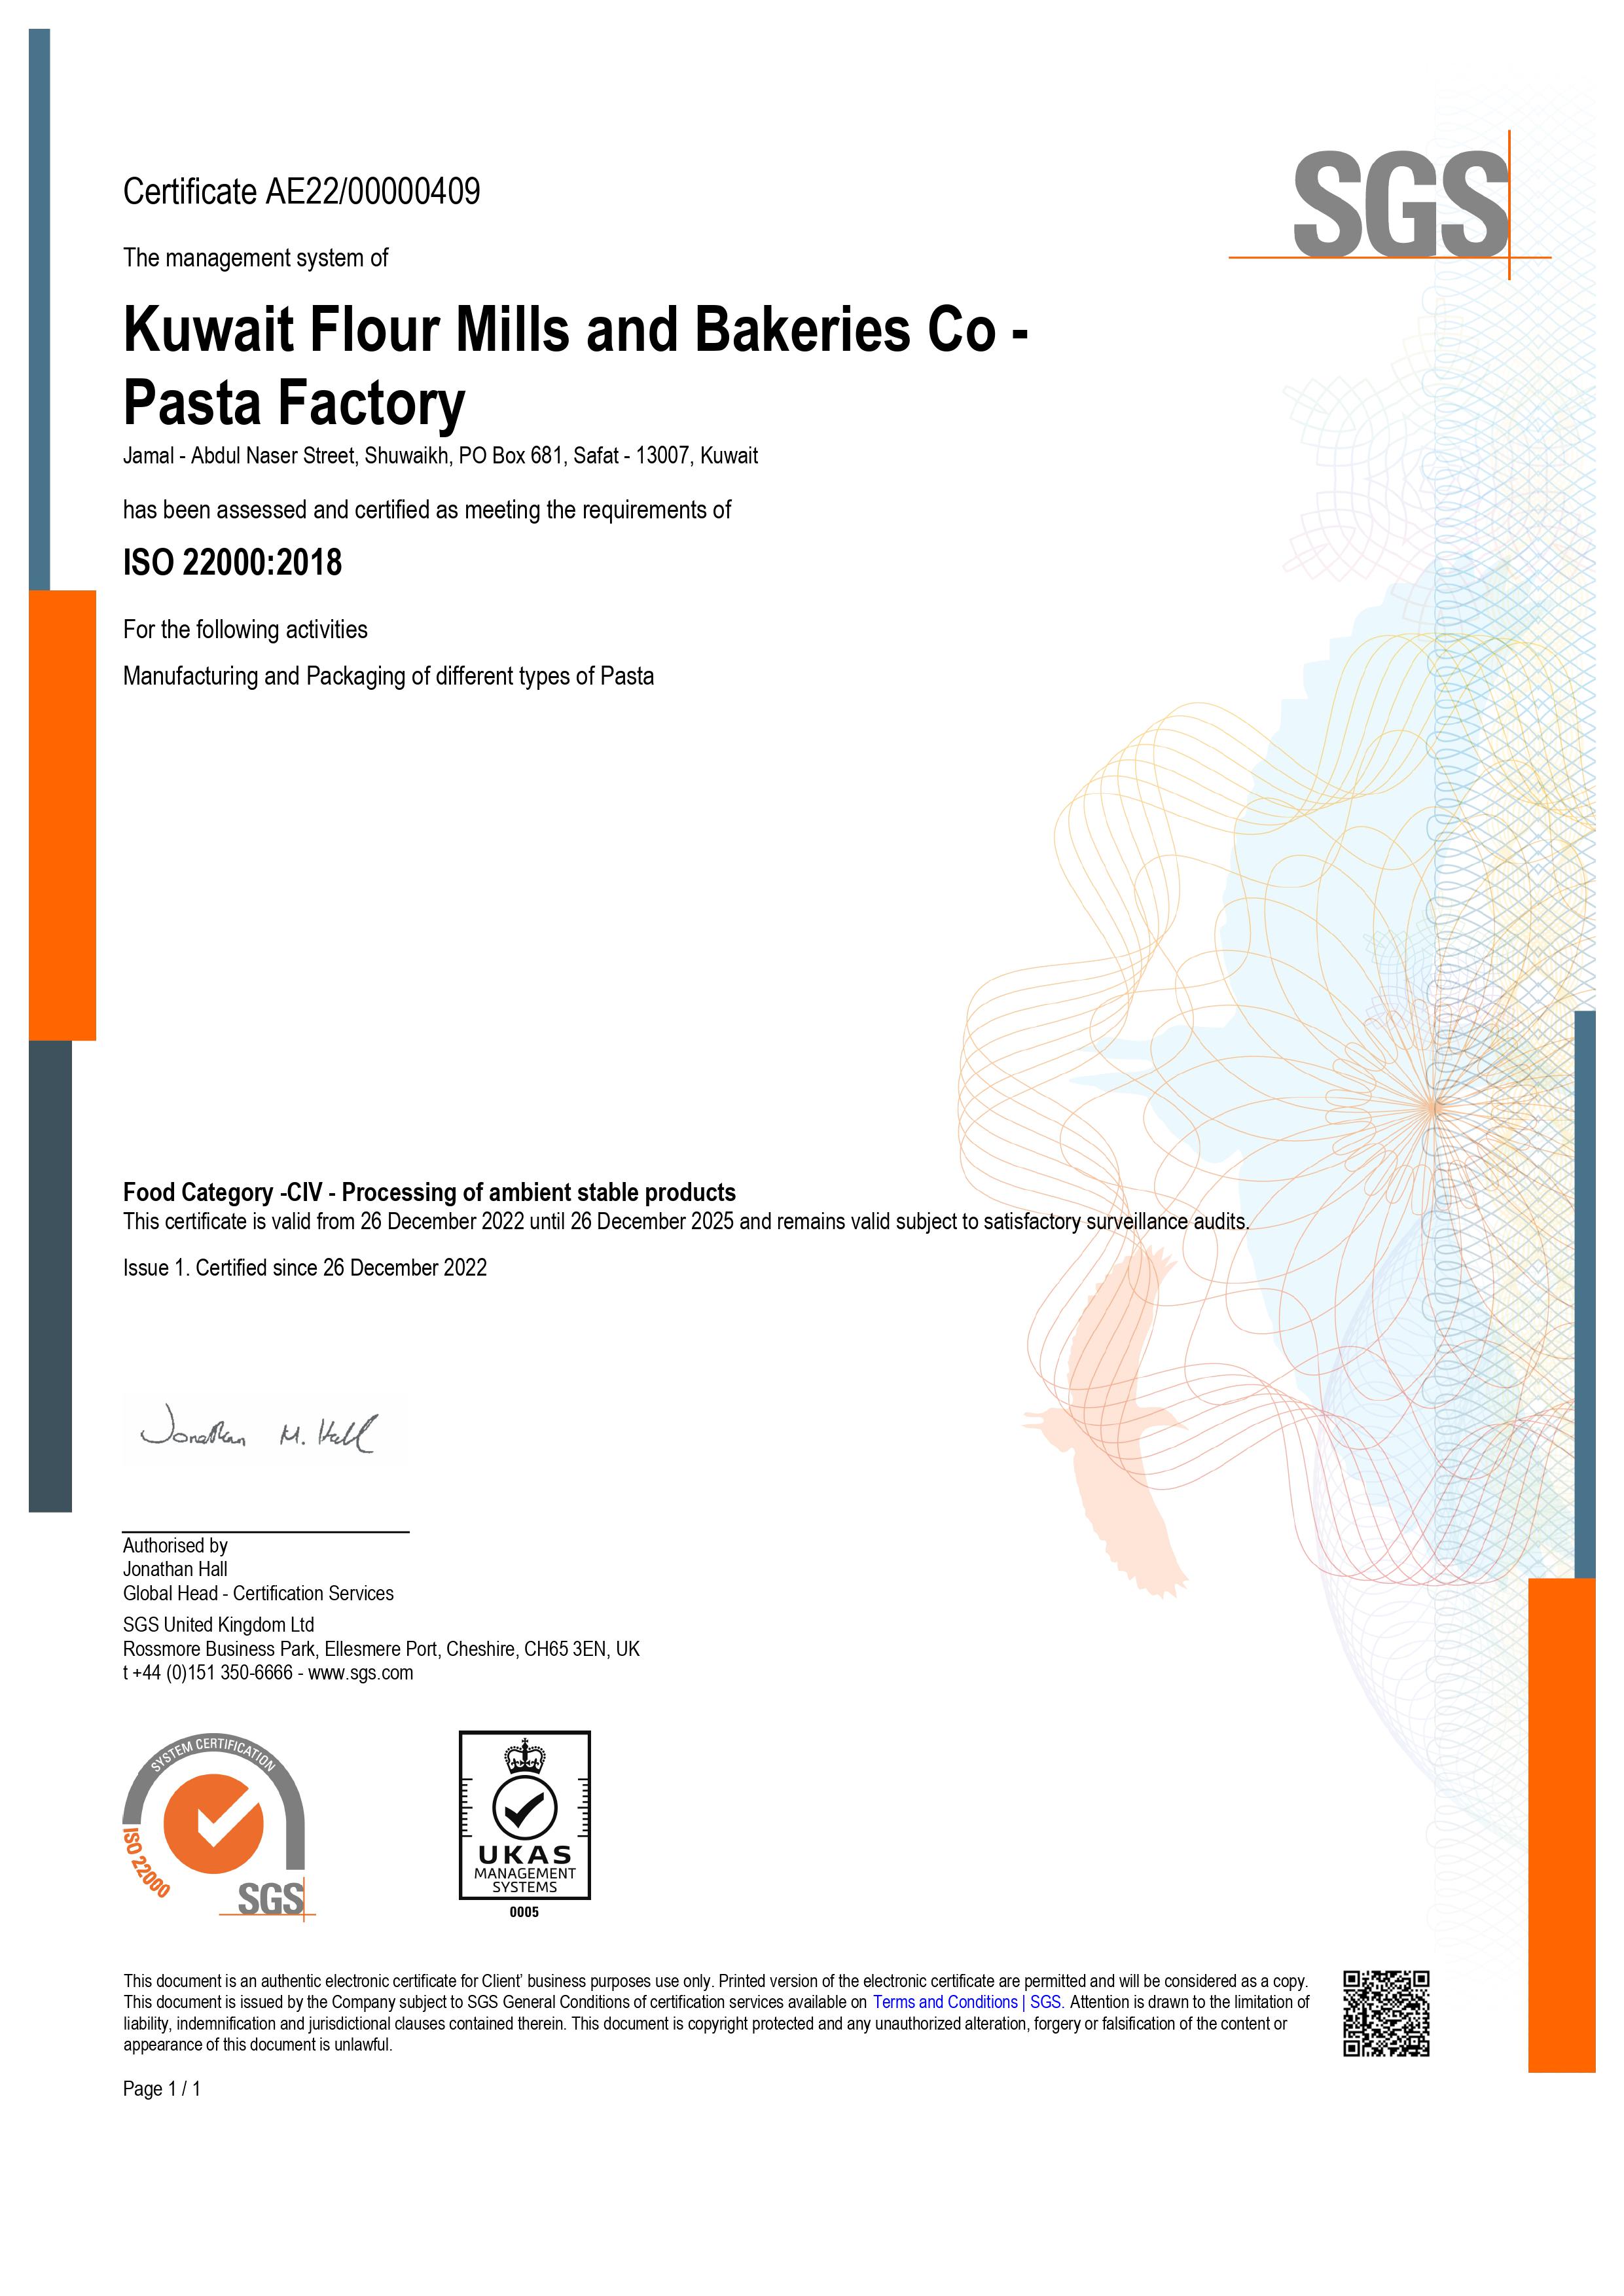 ISO 22000 - 2018 certification for Pasta_valid till 2025